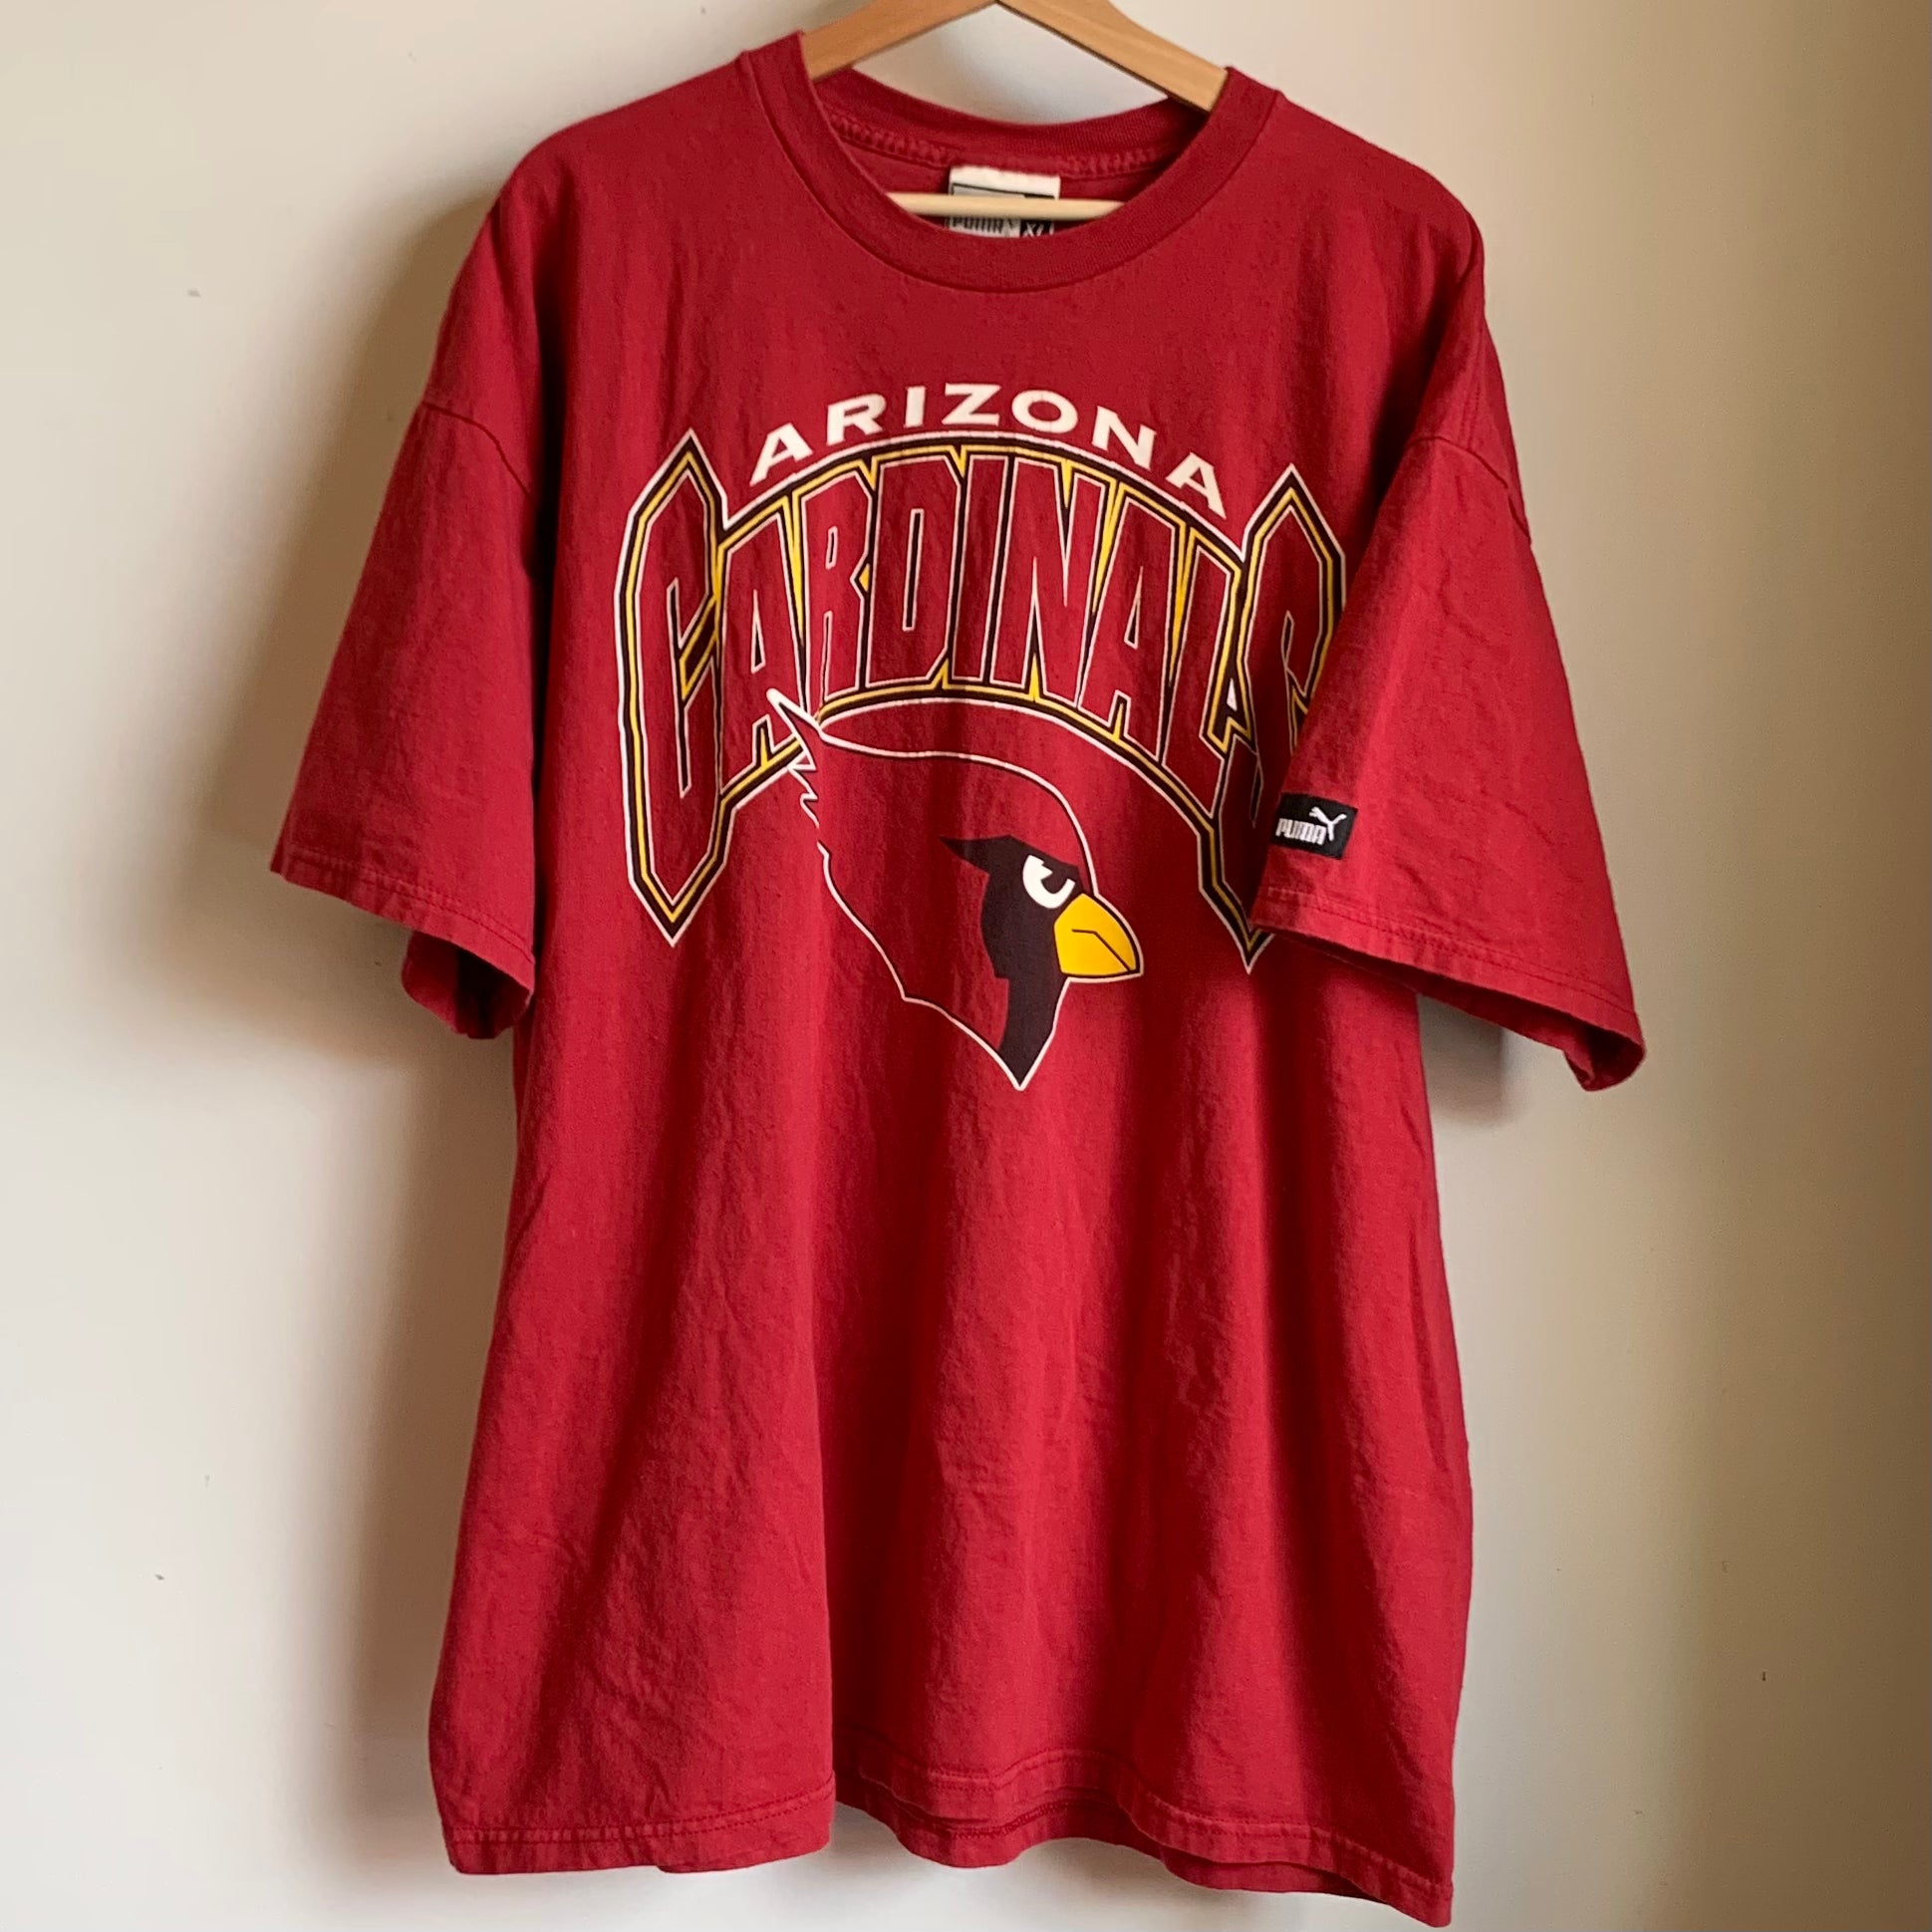 Pin on Arizona Cardinals jersey